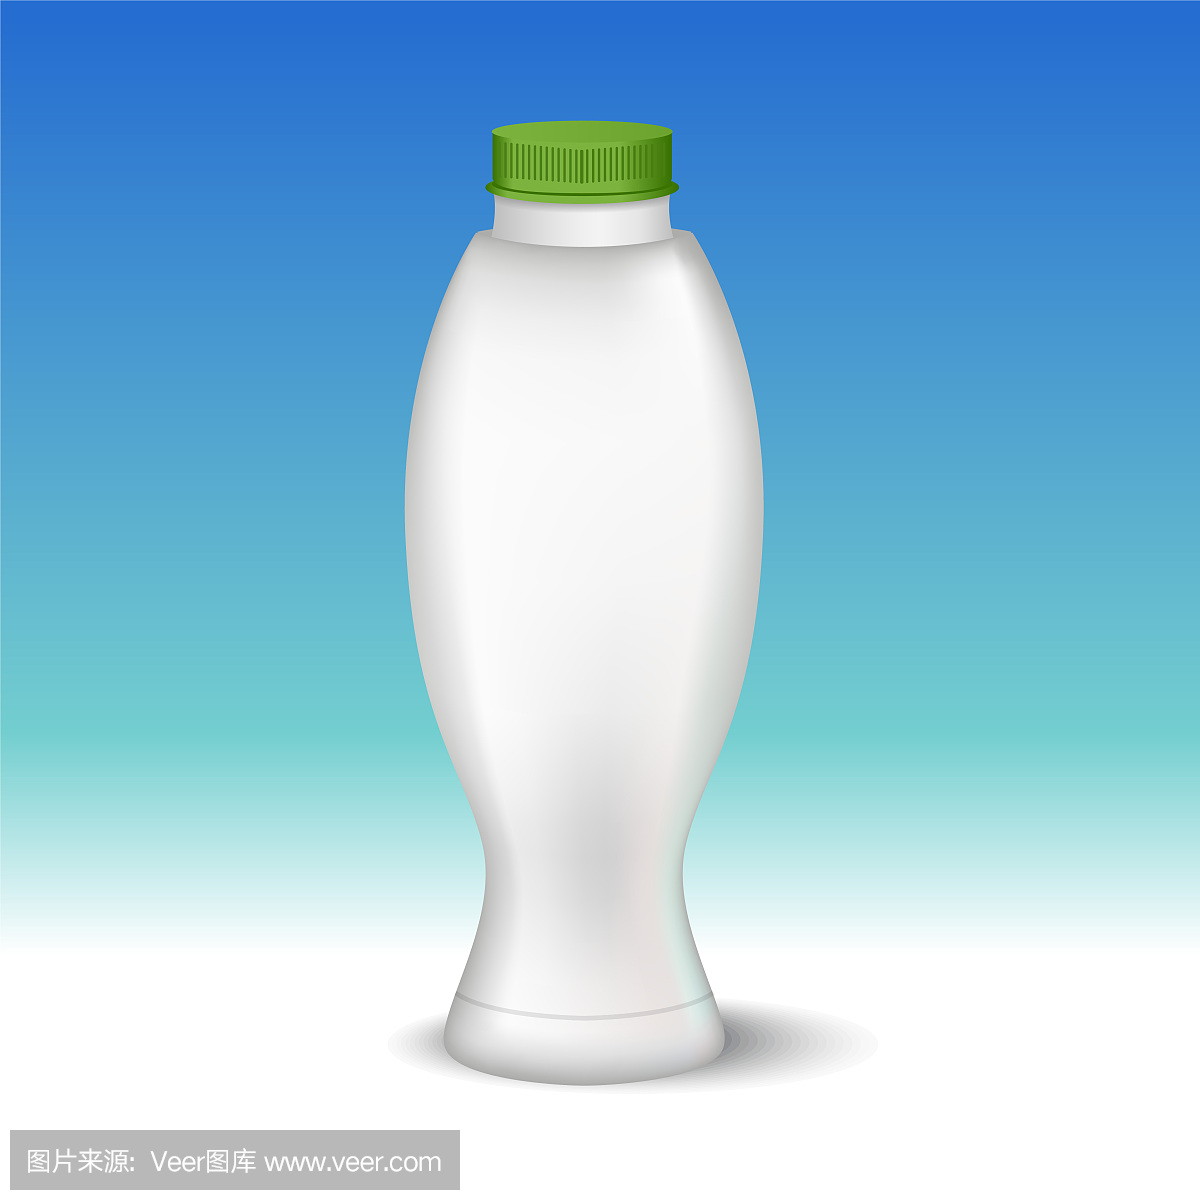 白色光滑塑料螺旋盖奶瓶,用于牛奶,酸奶,奶油,甜点。现实的包装模型模板。前视图。矢量插图。